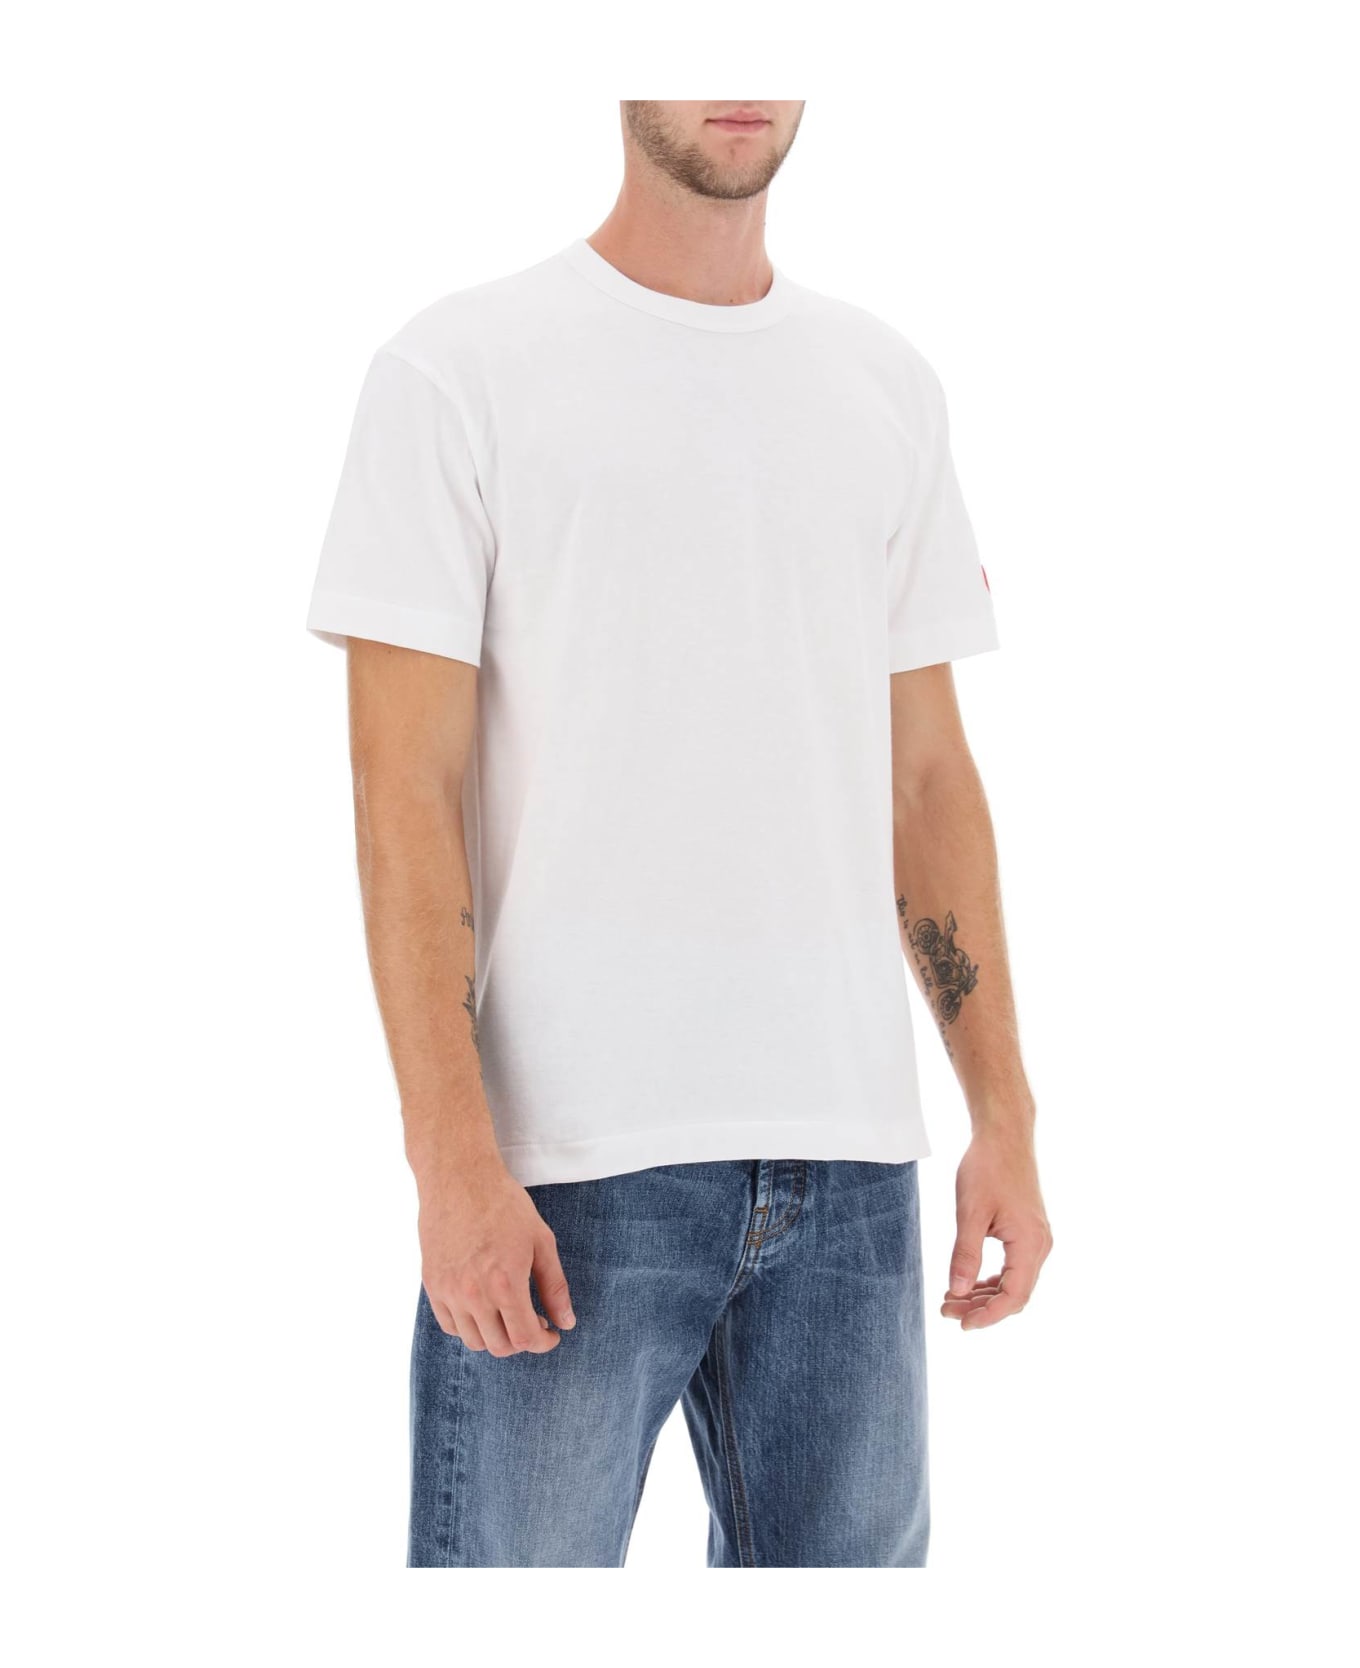 Comme des Garçons Shirt Boy T-shirt With Pixel Patch - White シャツ